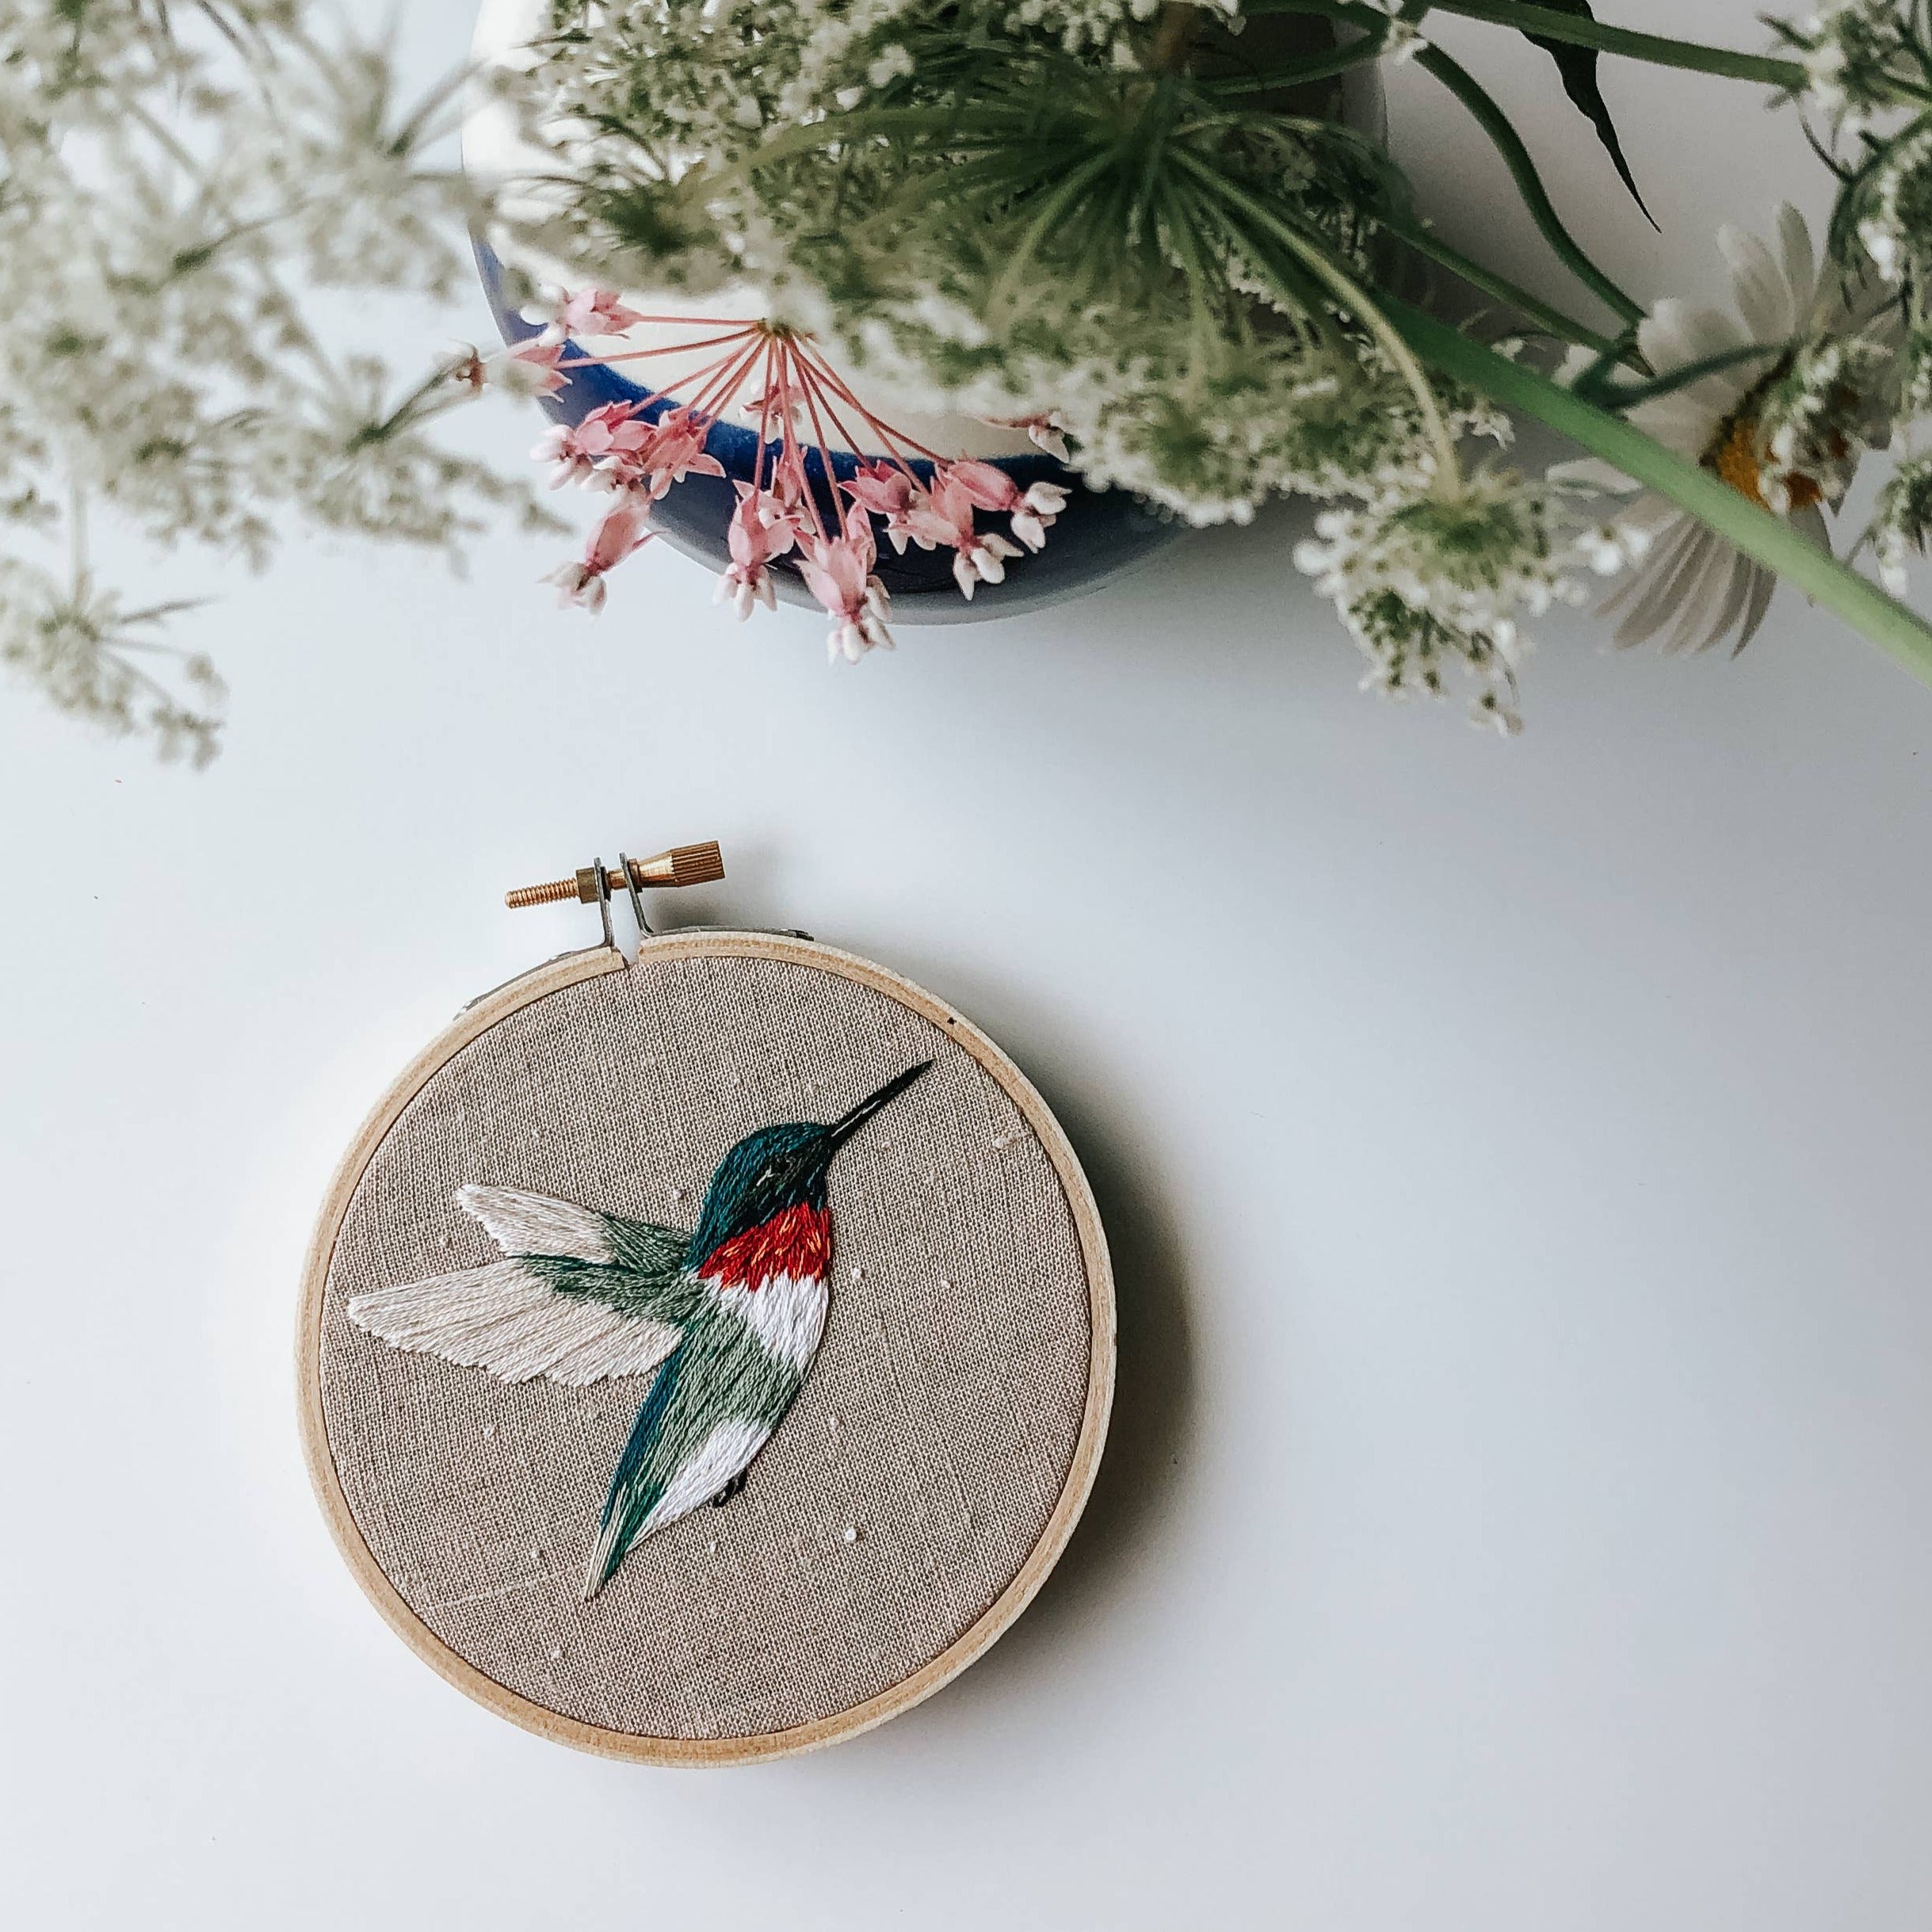 Hummingbird Embroidery Kit